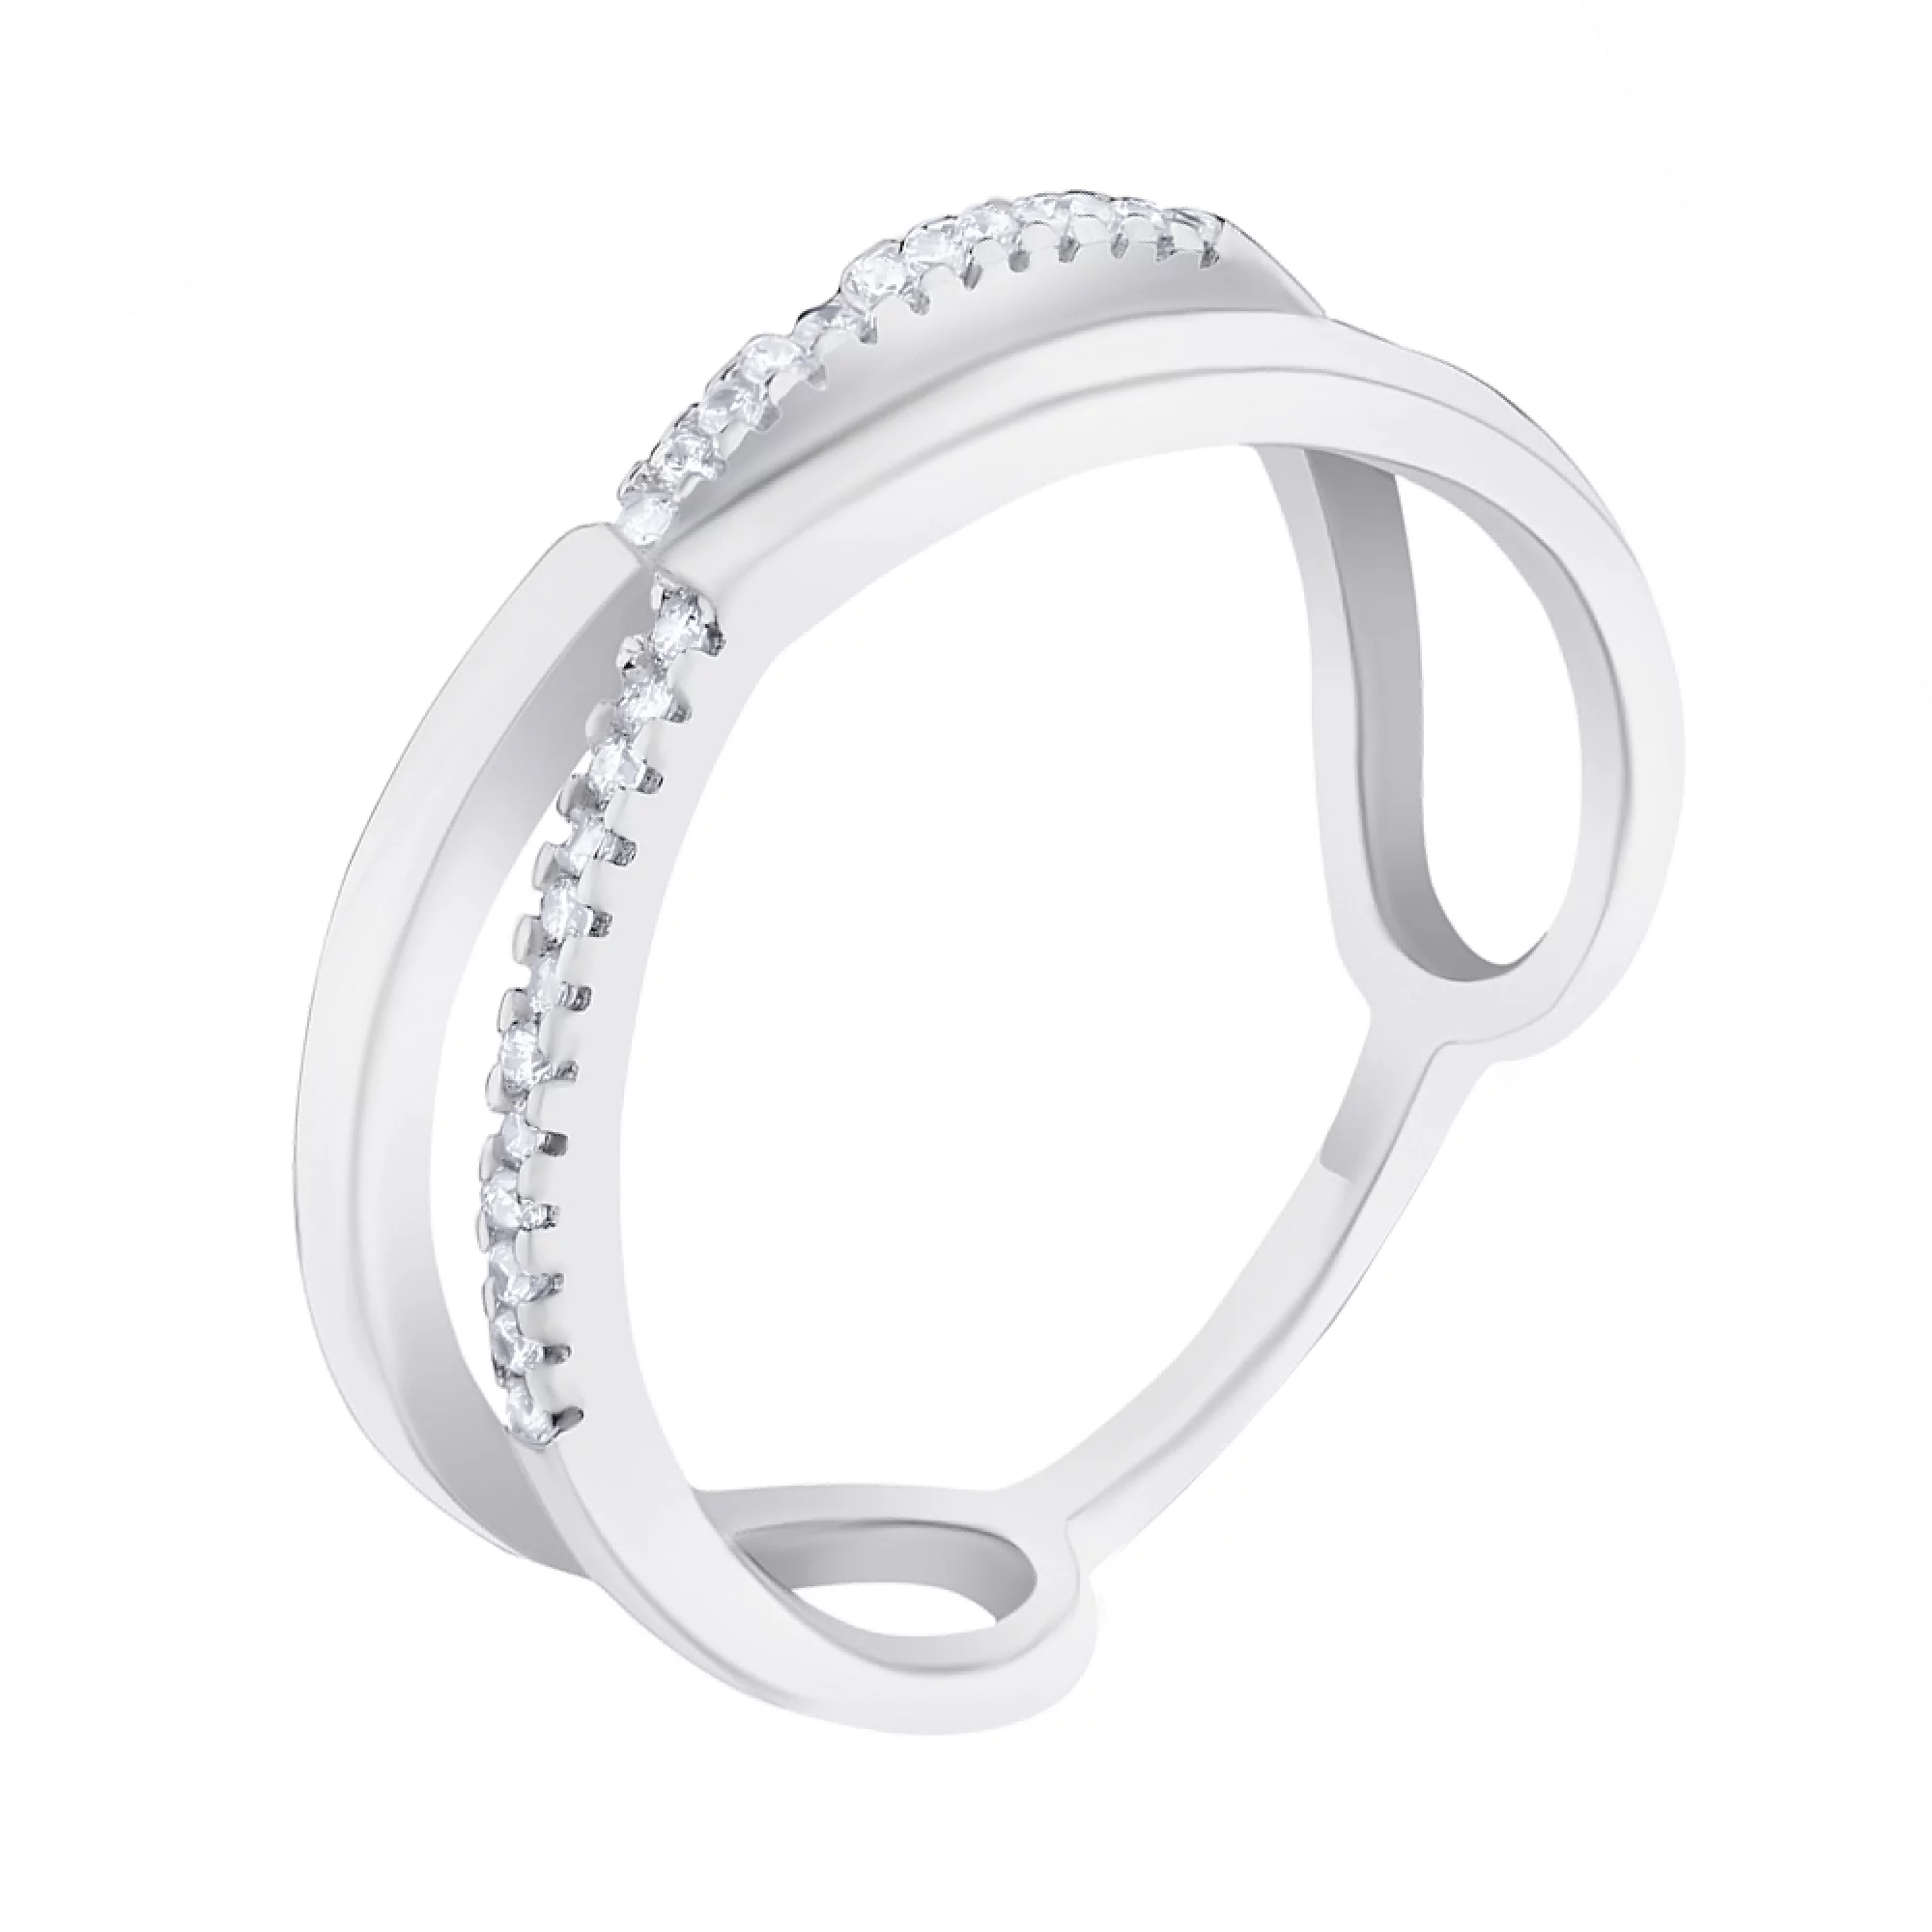 Двойное кольцо из серебра с дорожкой фианитов - 1572344 – изображение 1